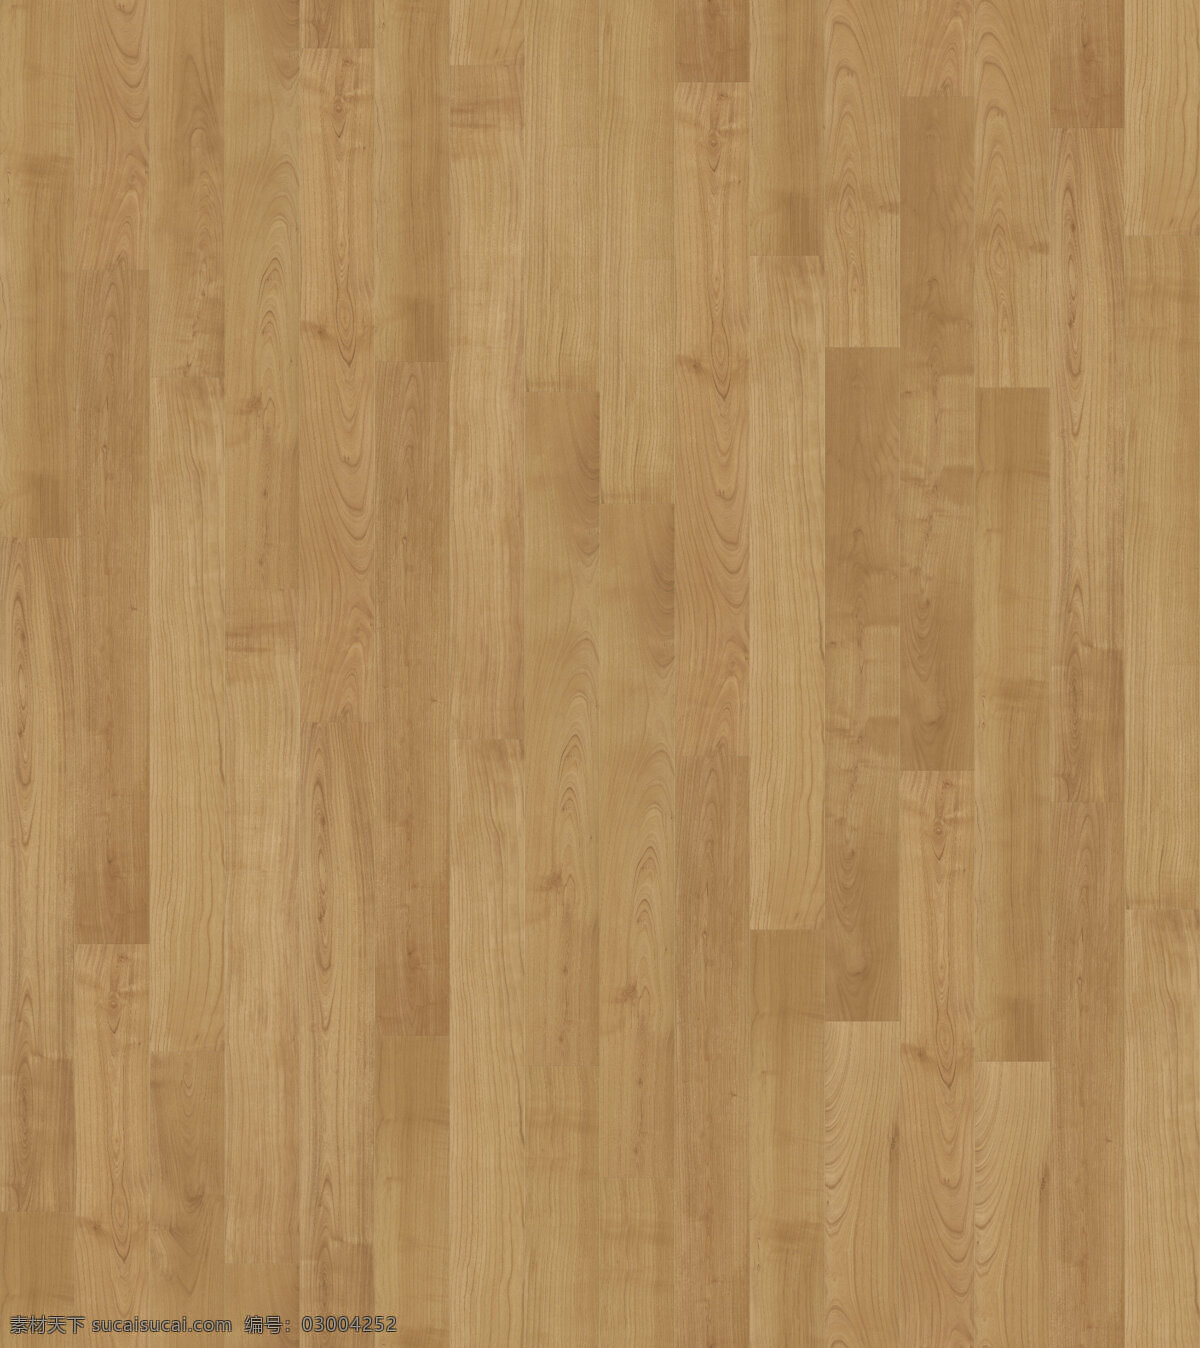 浅色 现代 简约 木地板 材质 贴图 室内客厅贴图 地板材质 书籍库 木材料 3d 材料 模型 家装贴图网 素材网家电